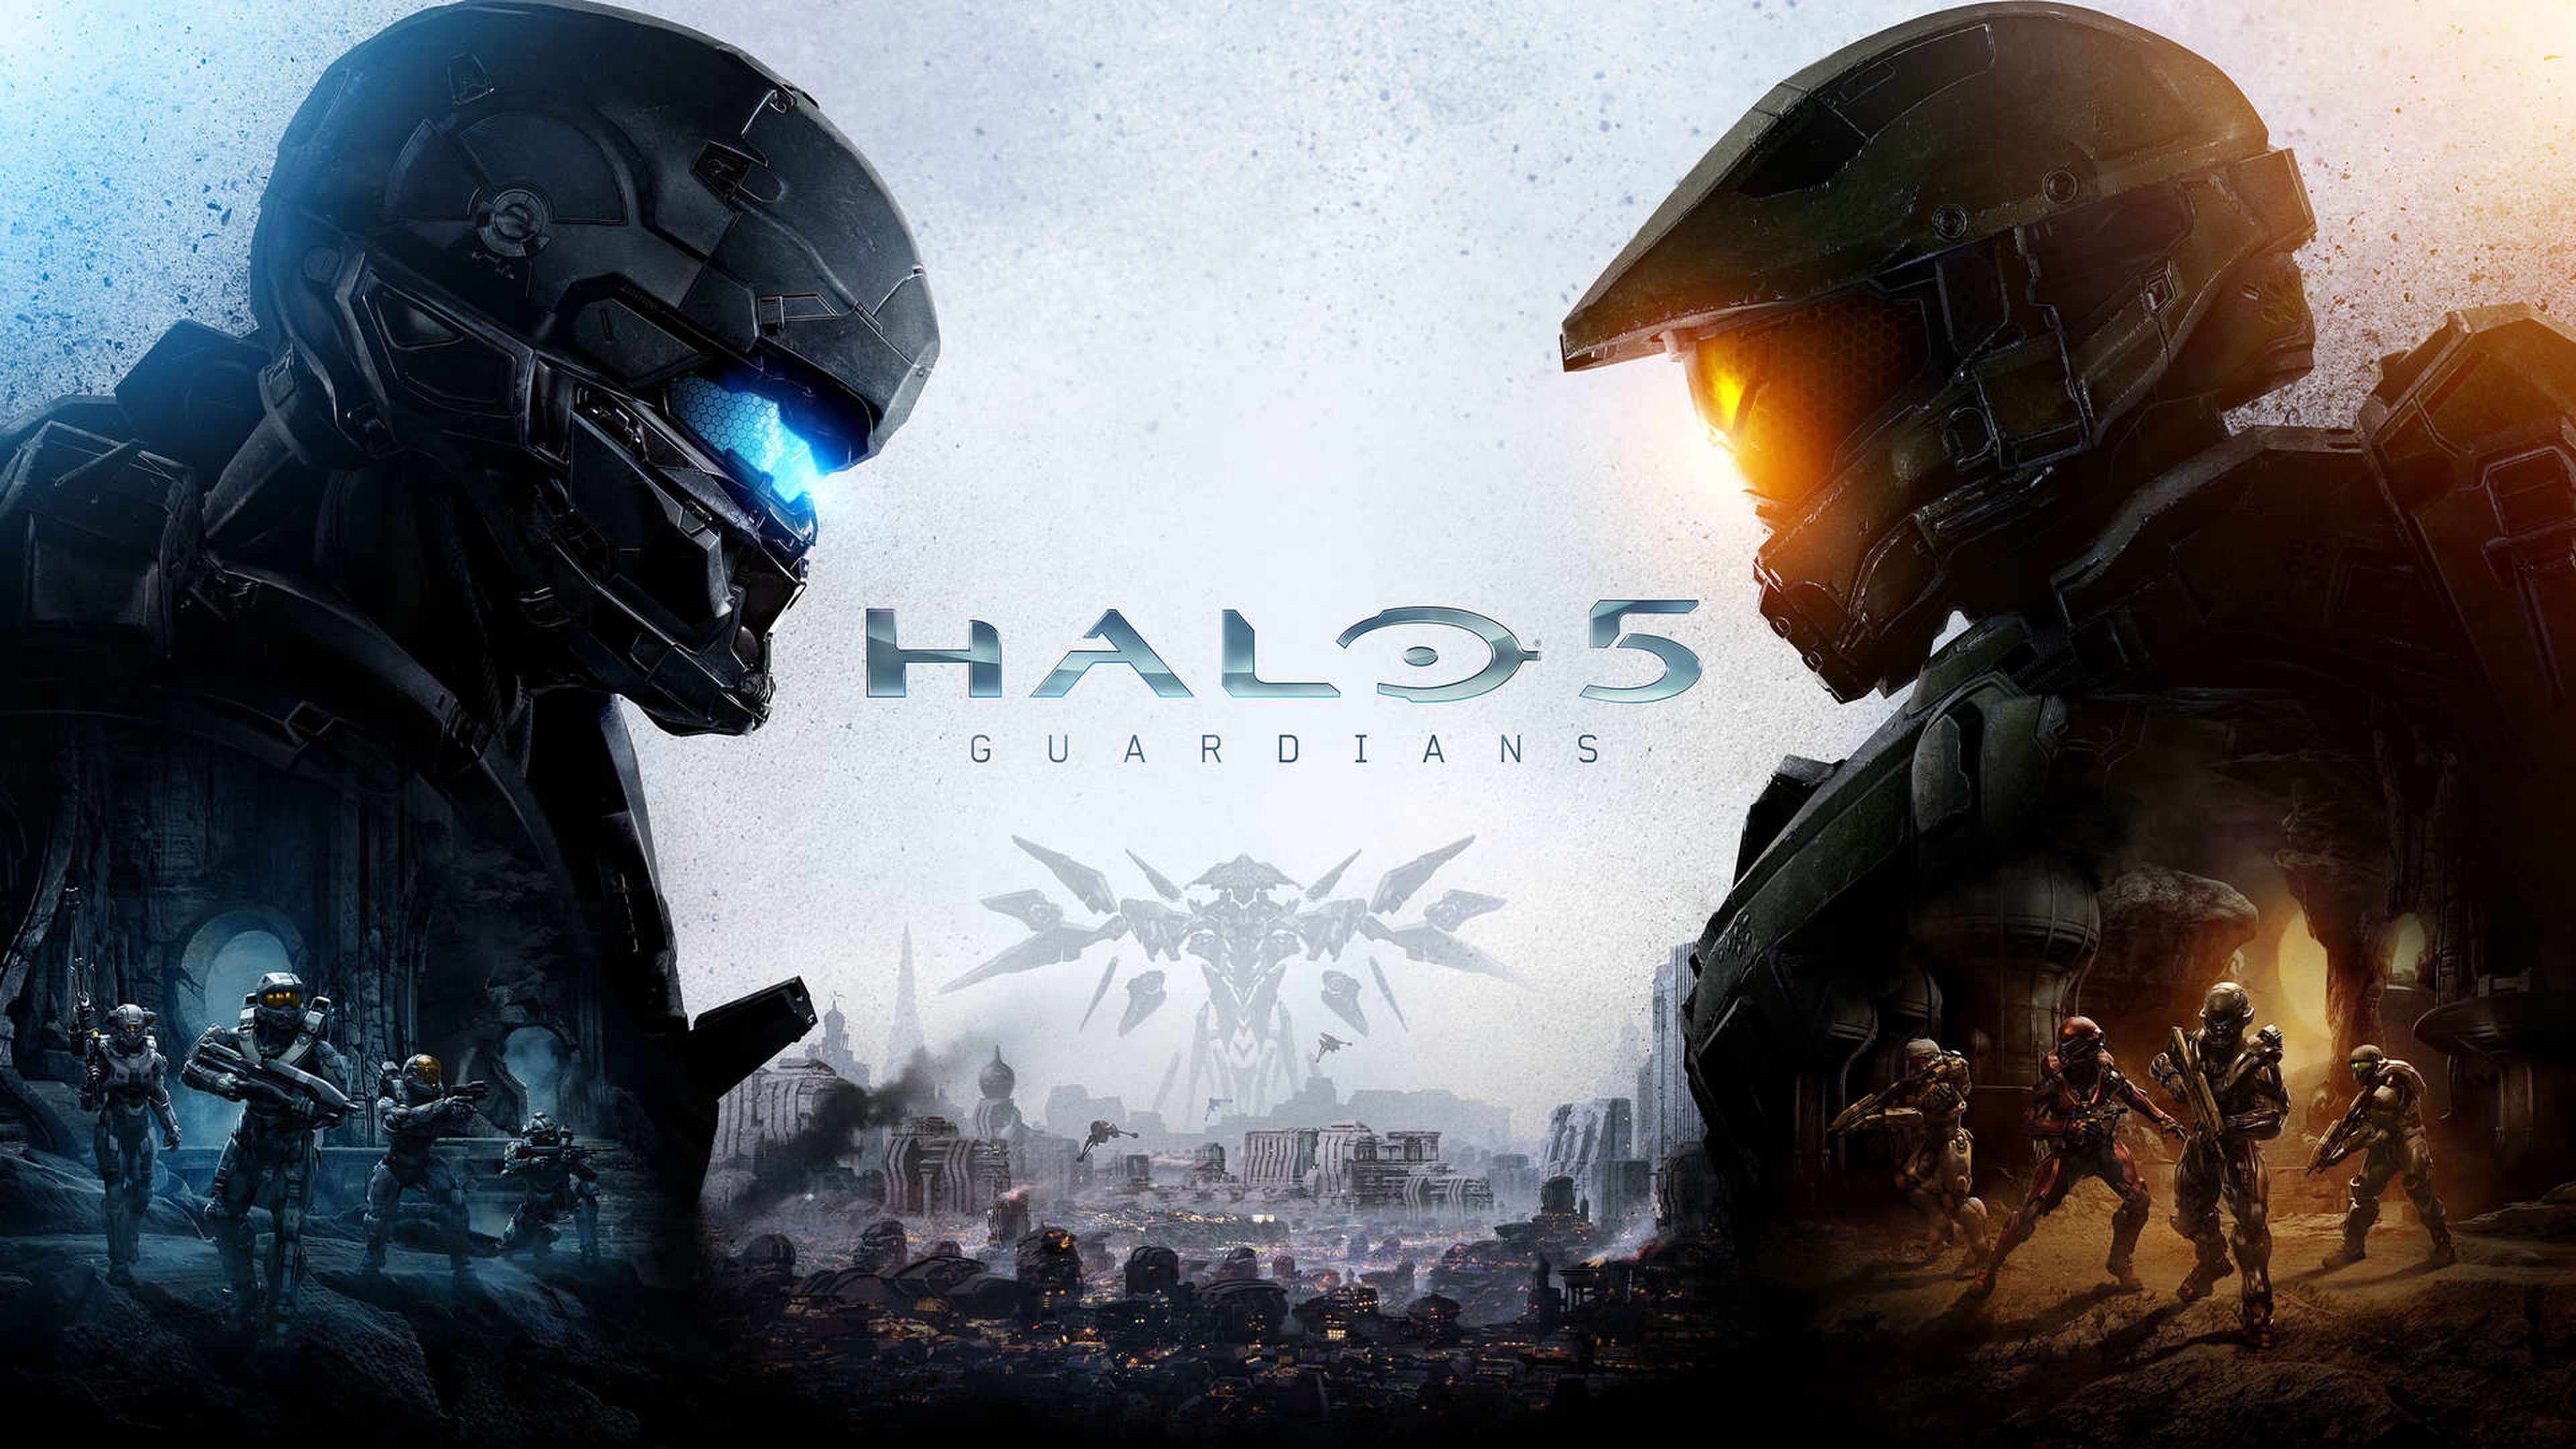 Halo 5 Guardians, cooperativo sólo con suscripción a Xbox Live Gold